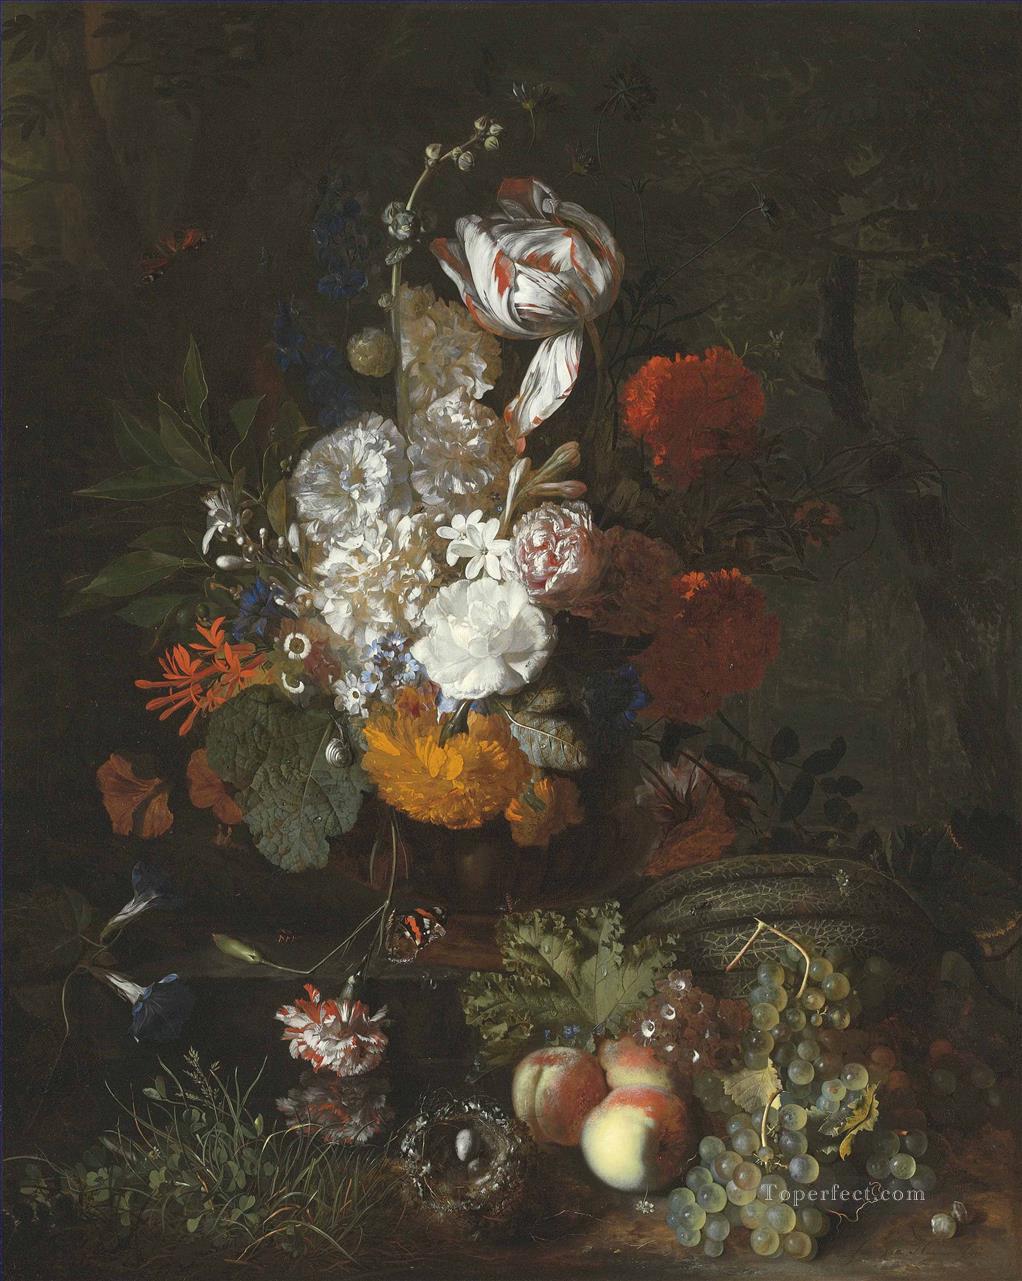 鳥の巣と卵のある花と果物のある静物画 ヤン・ファン・ホイスムの古典的な花油絵